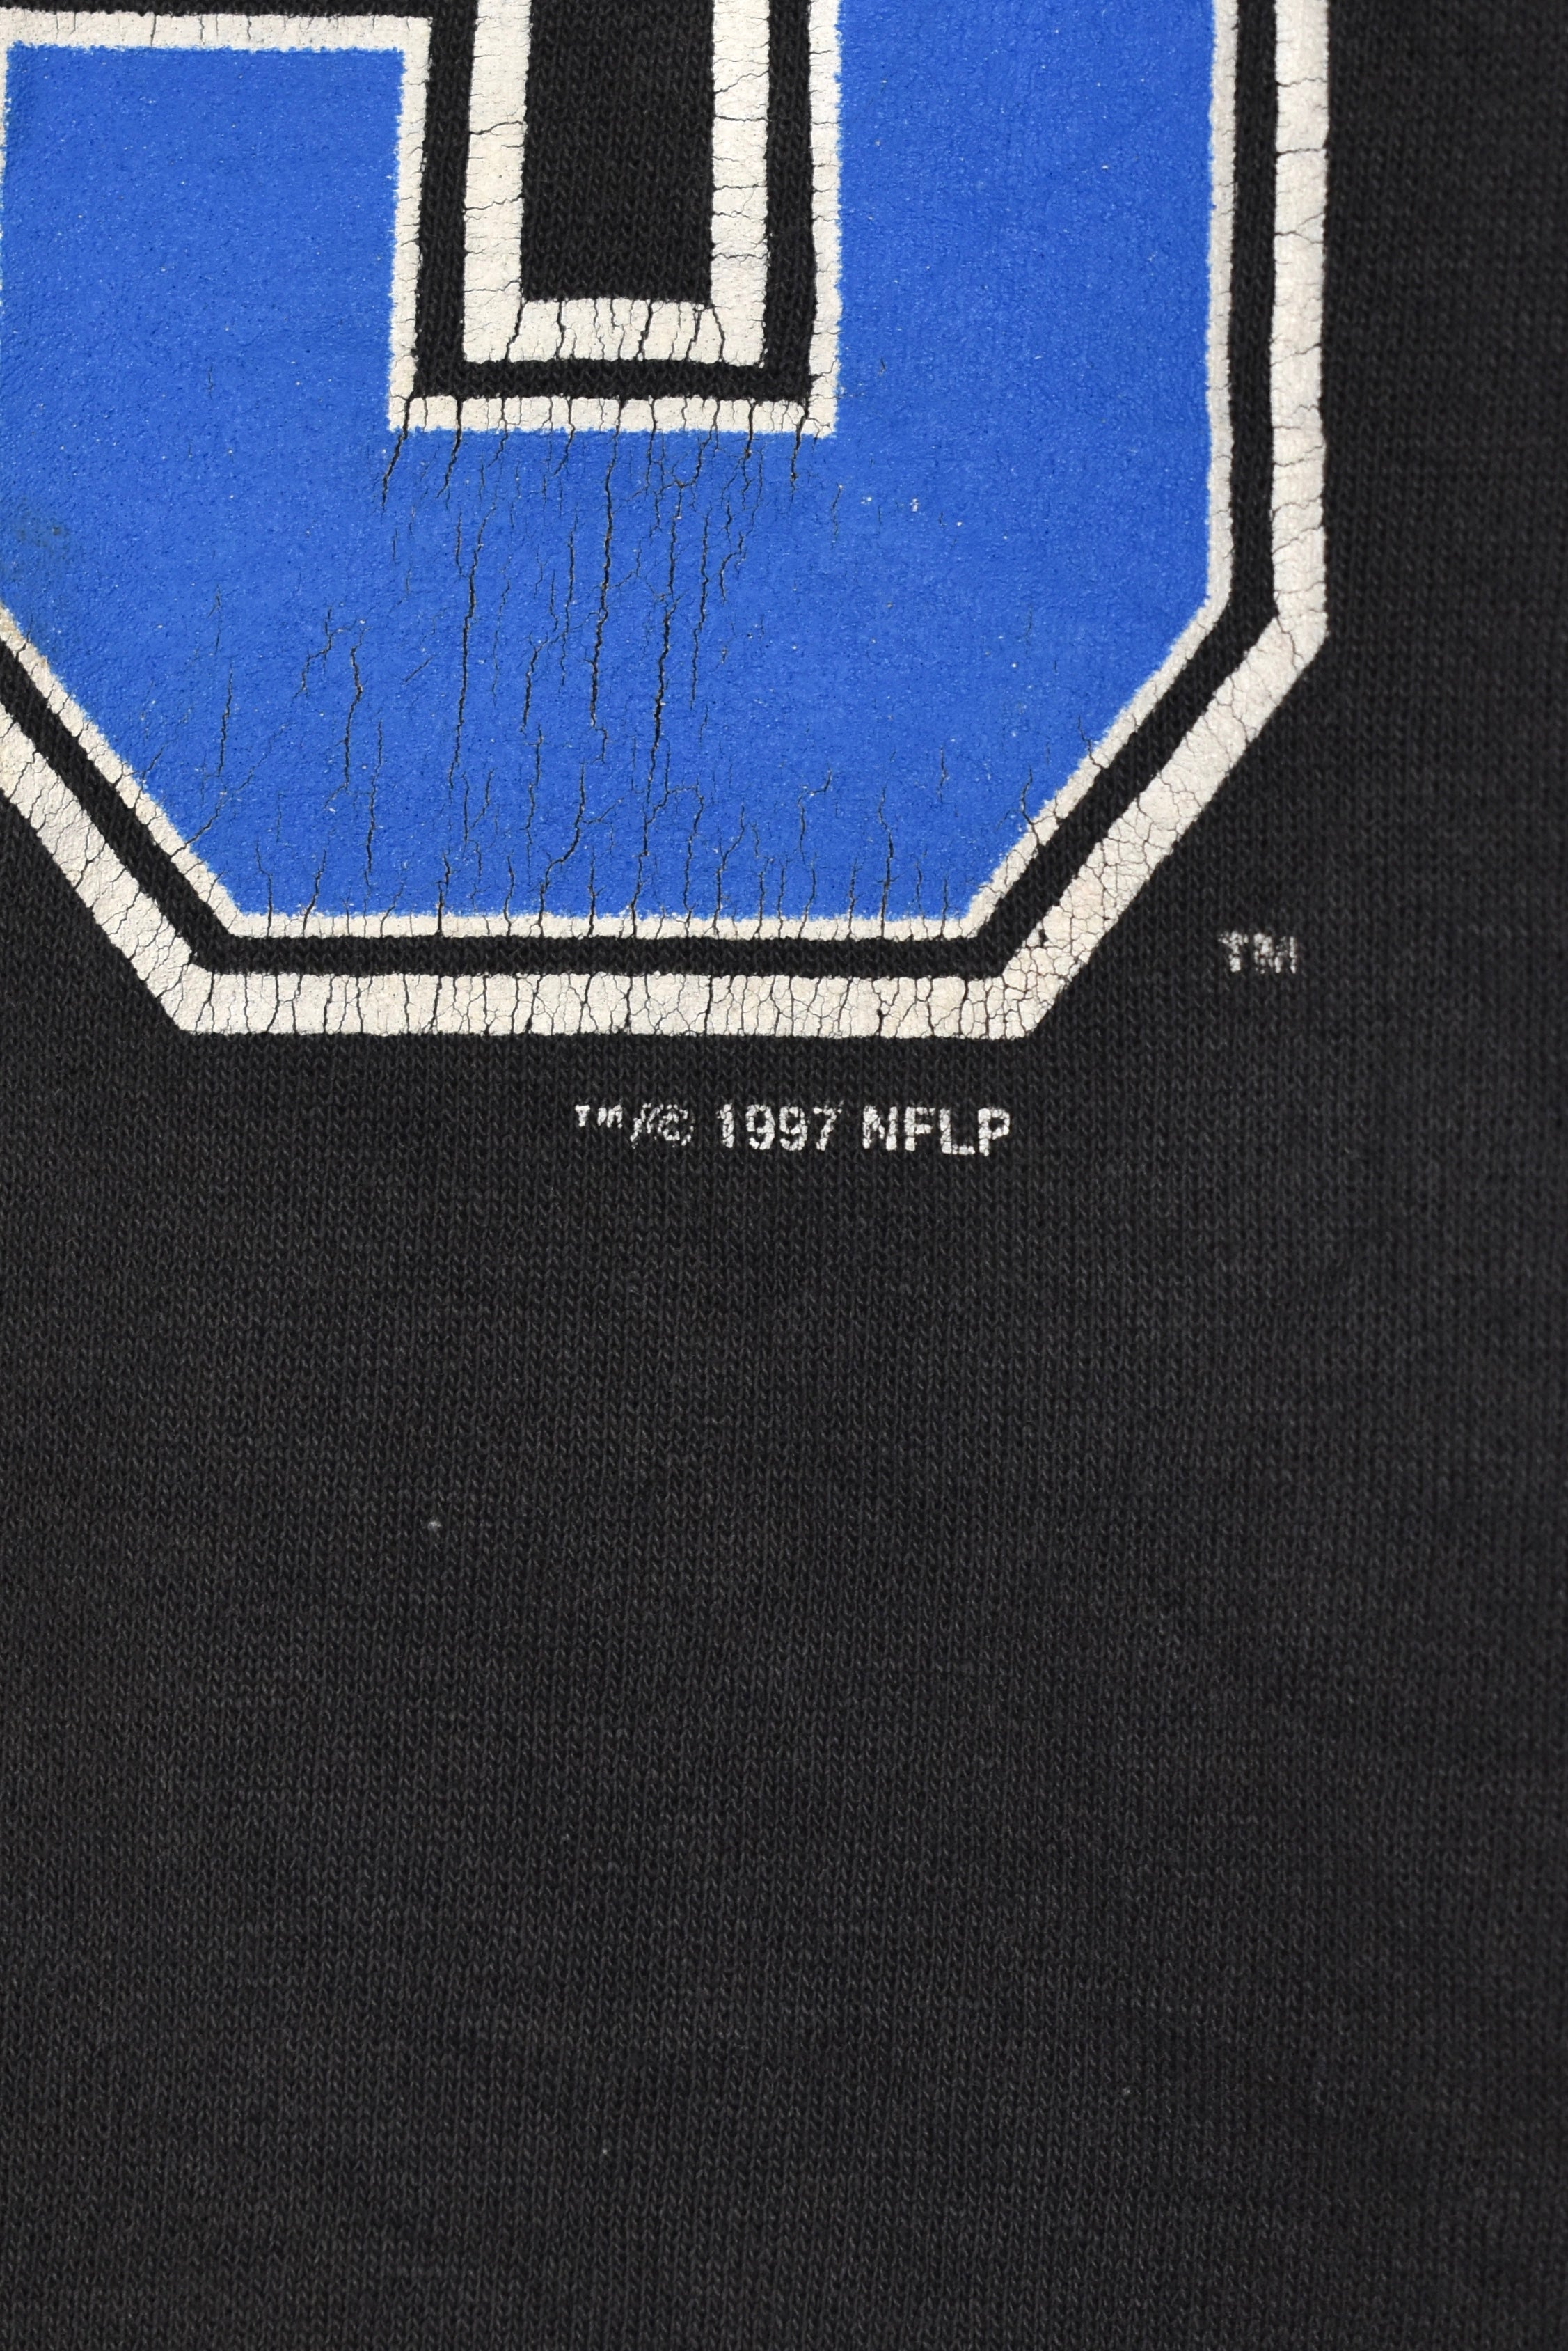 Vintage Detroit Lions sweatshirt, NFL 1997 black crewneck - Large